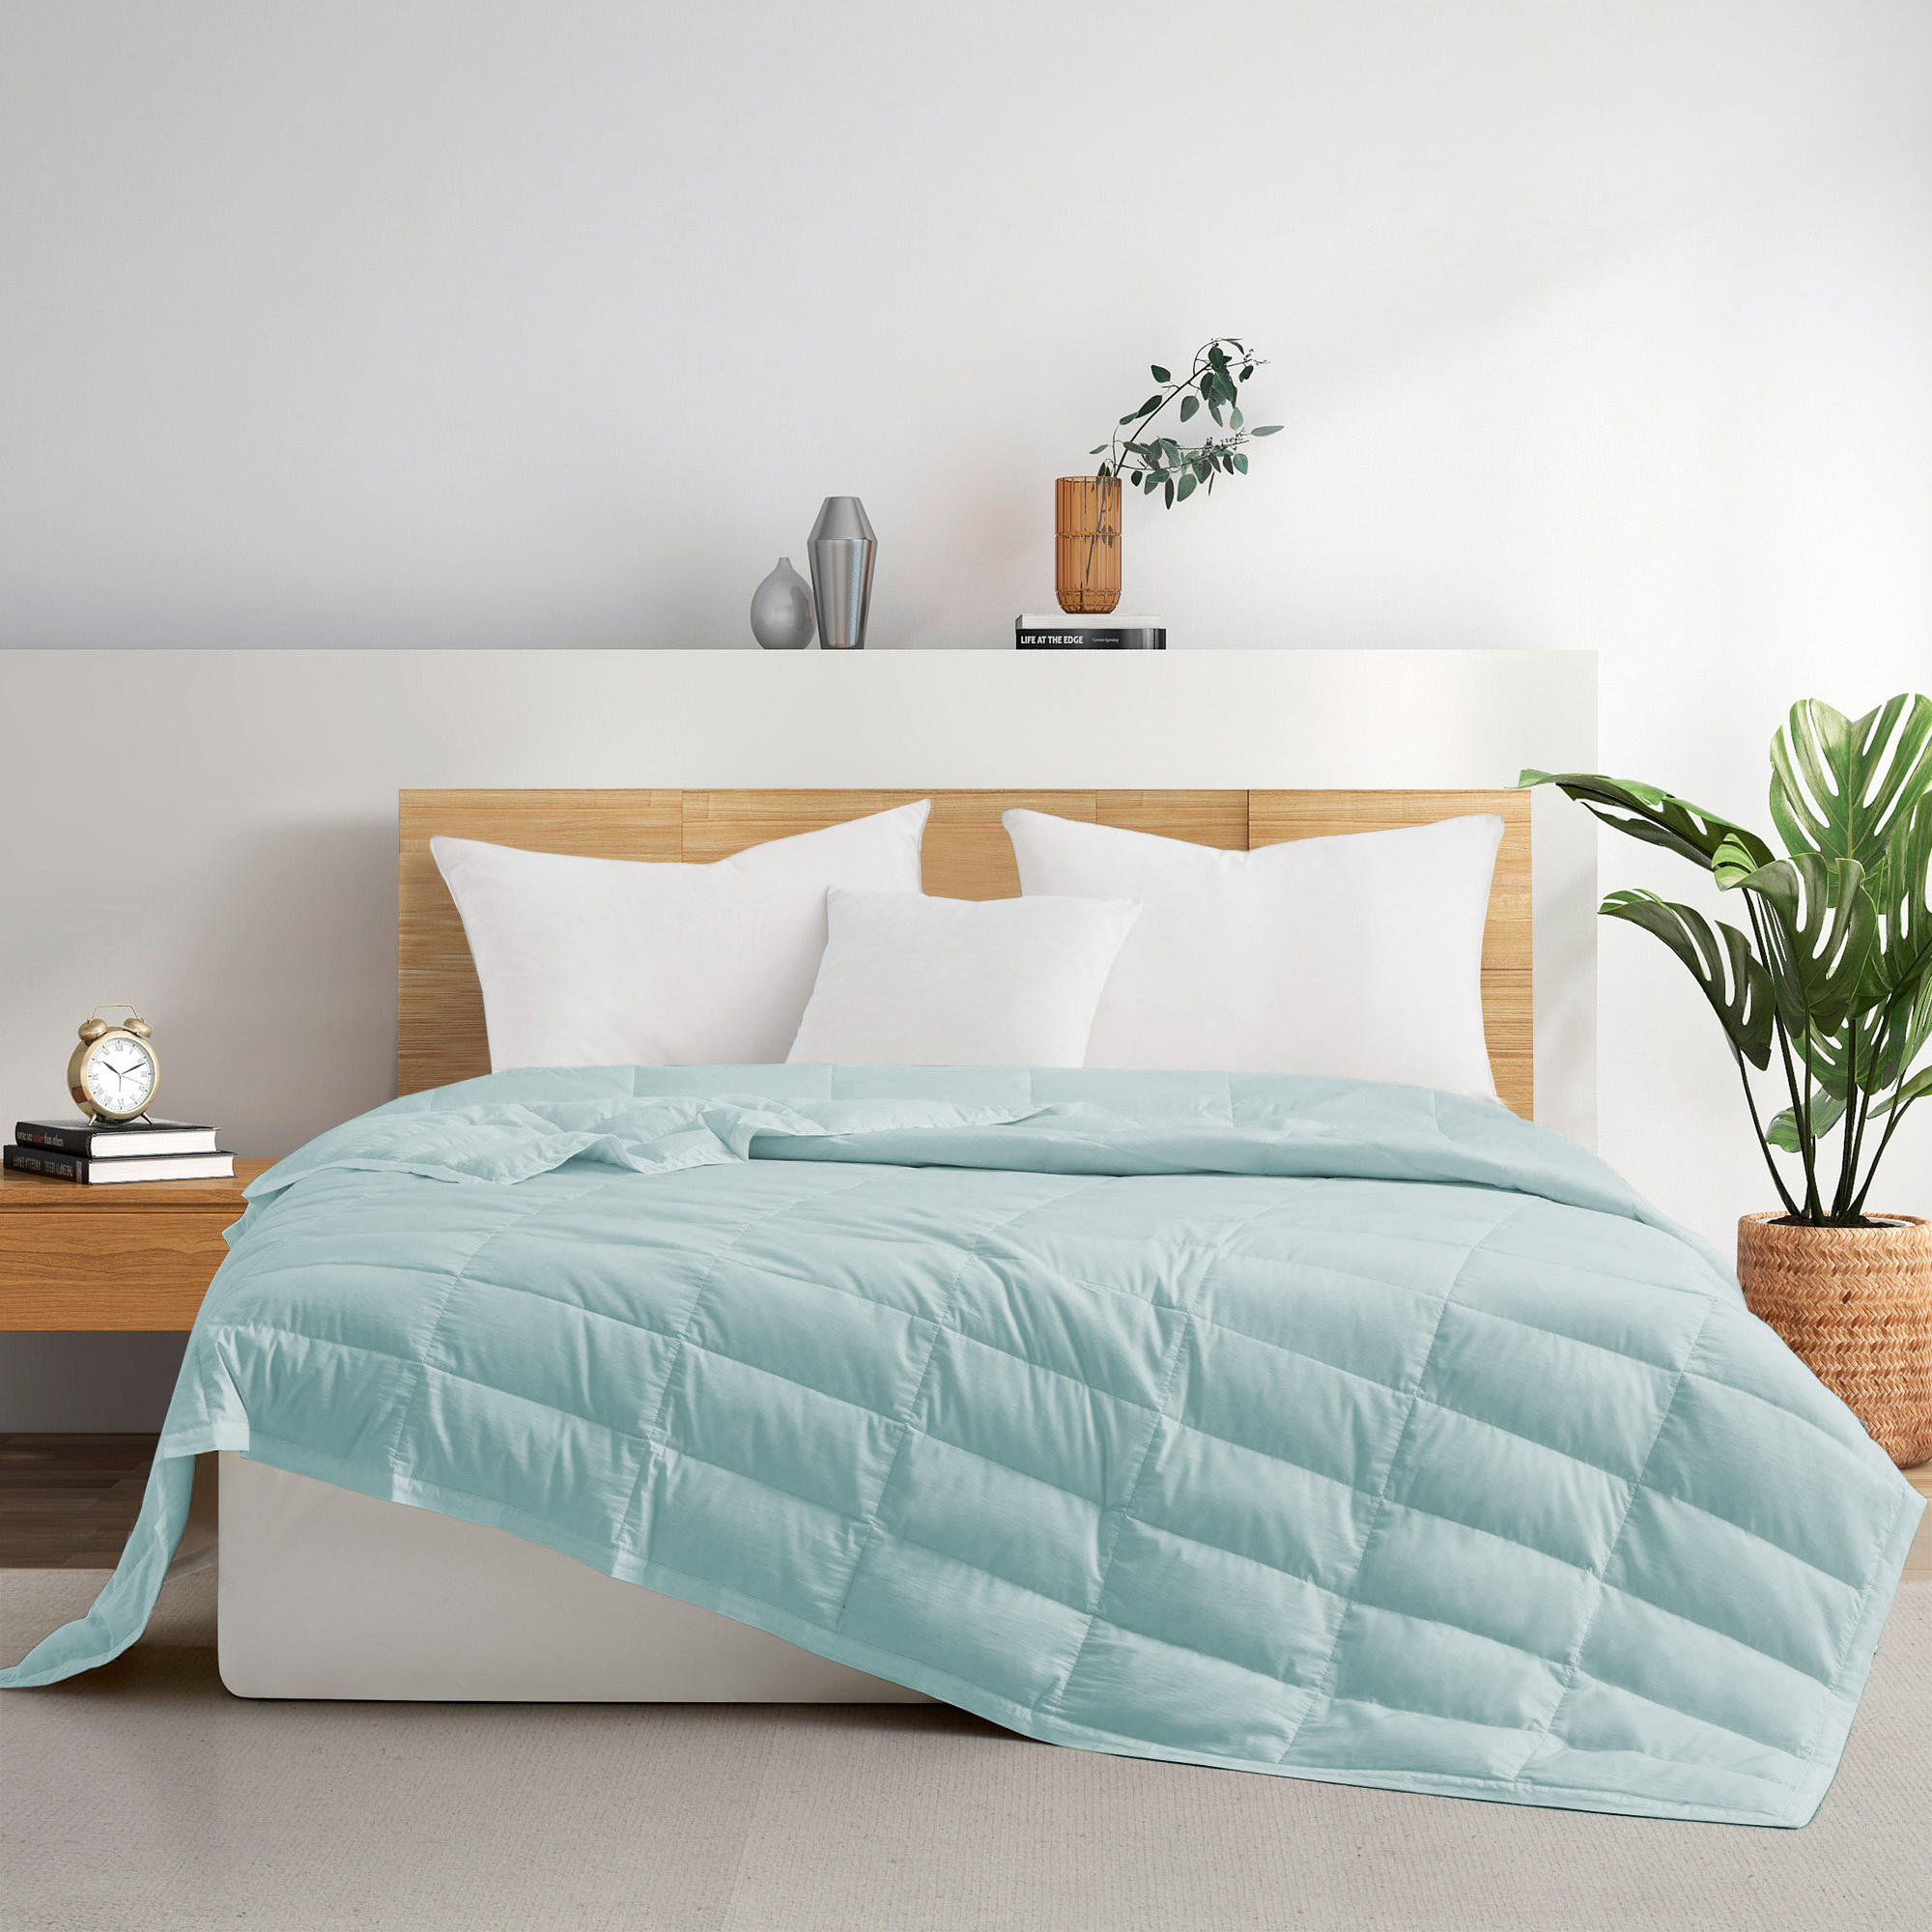 TENCELâ¢ Lyocell Lightweight Cooling Down Blanket-Luxurious Comfort Summer Blanket - Starlight Blue, Full/Queen